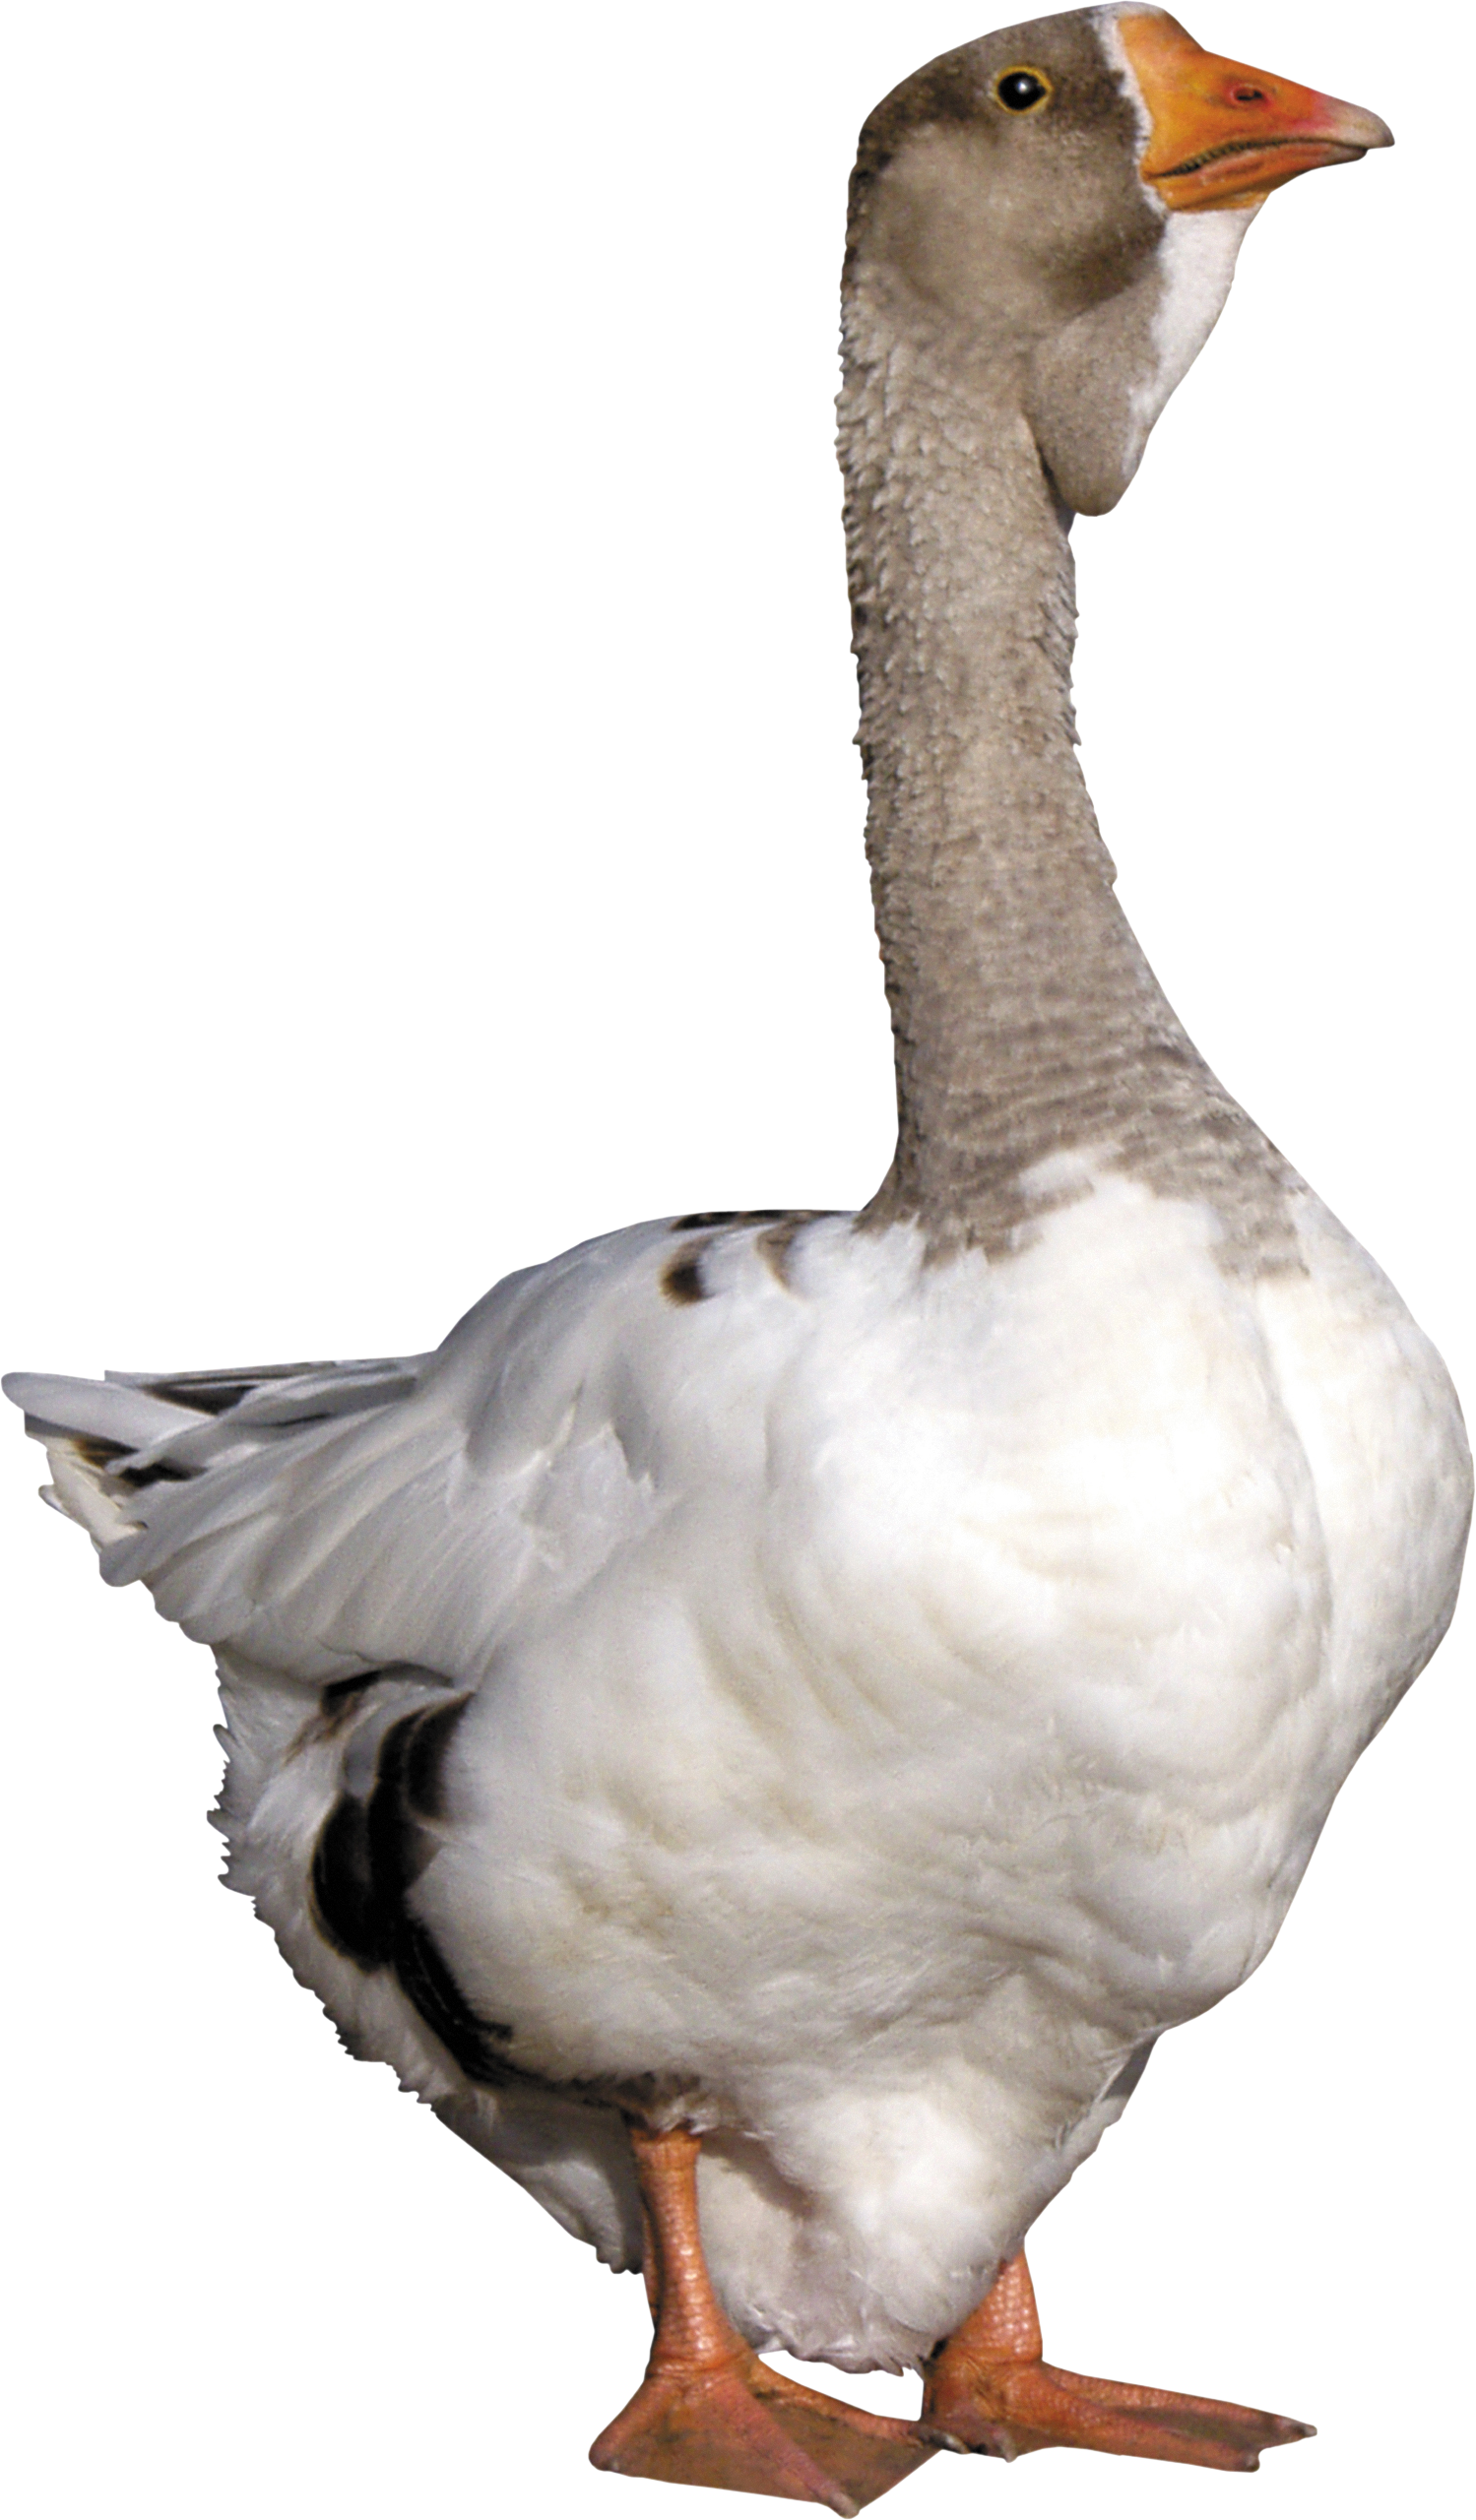 Goose PNG Transparent Image